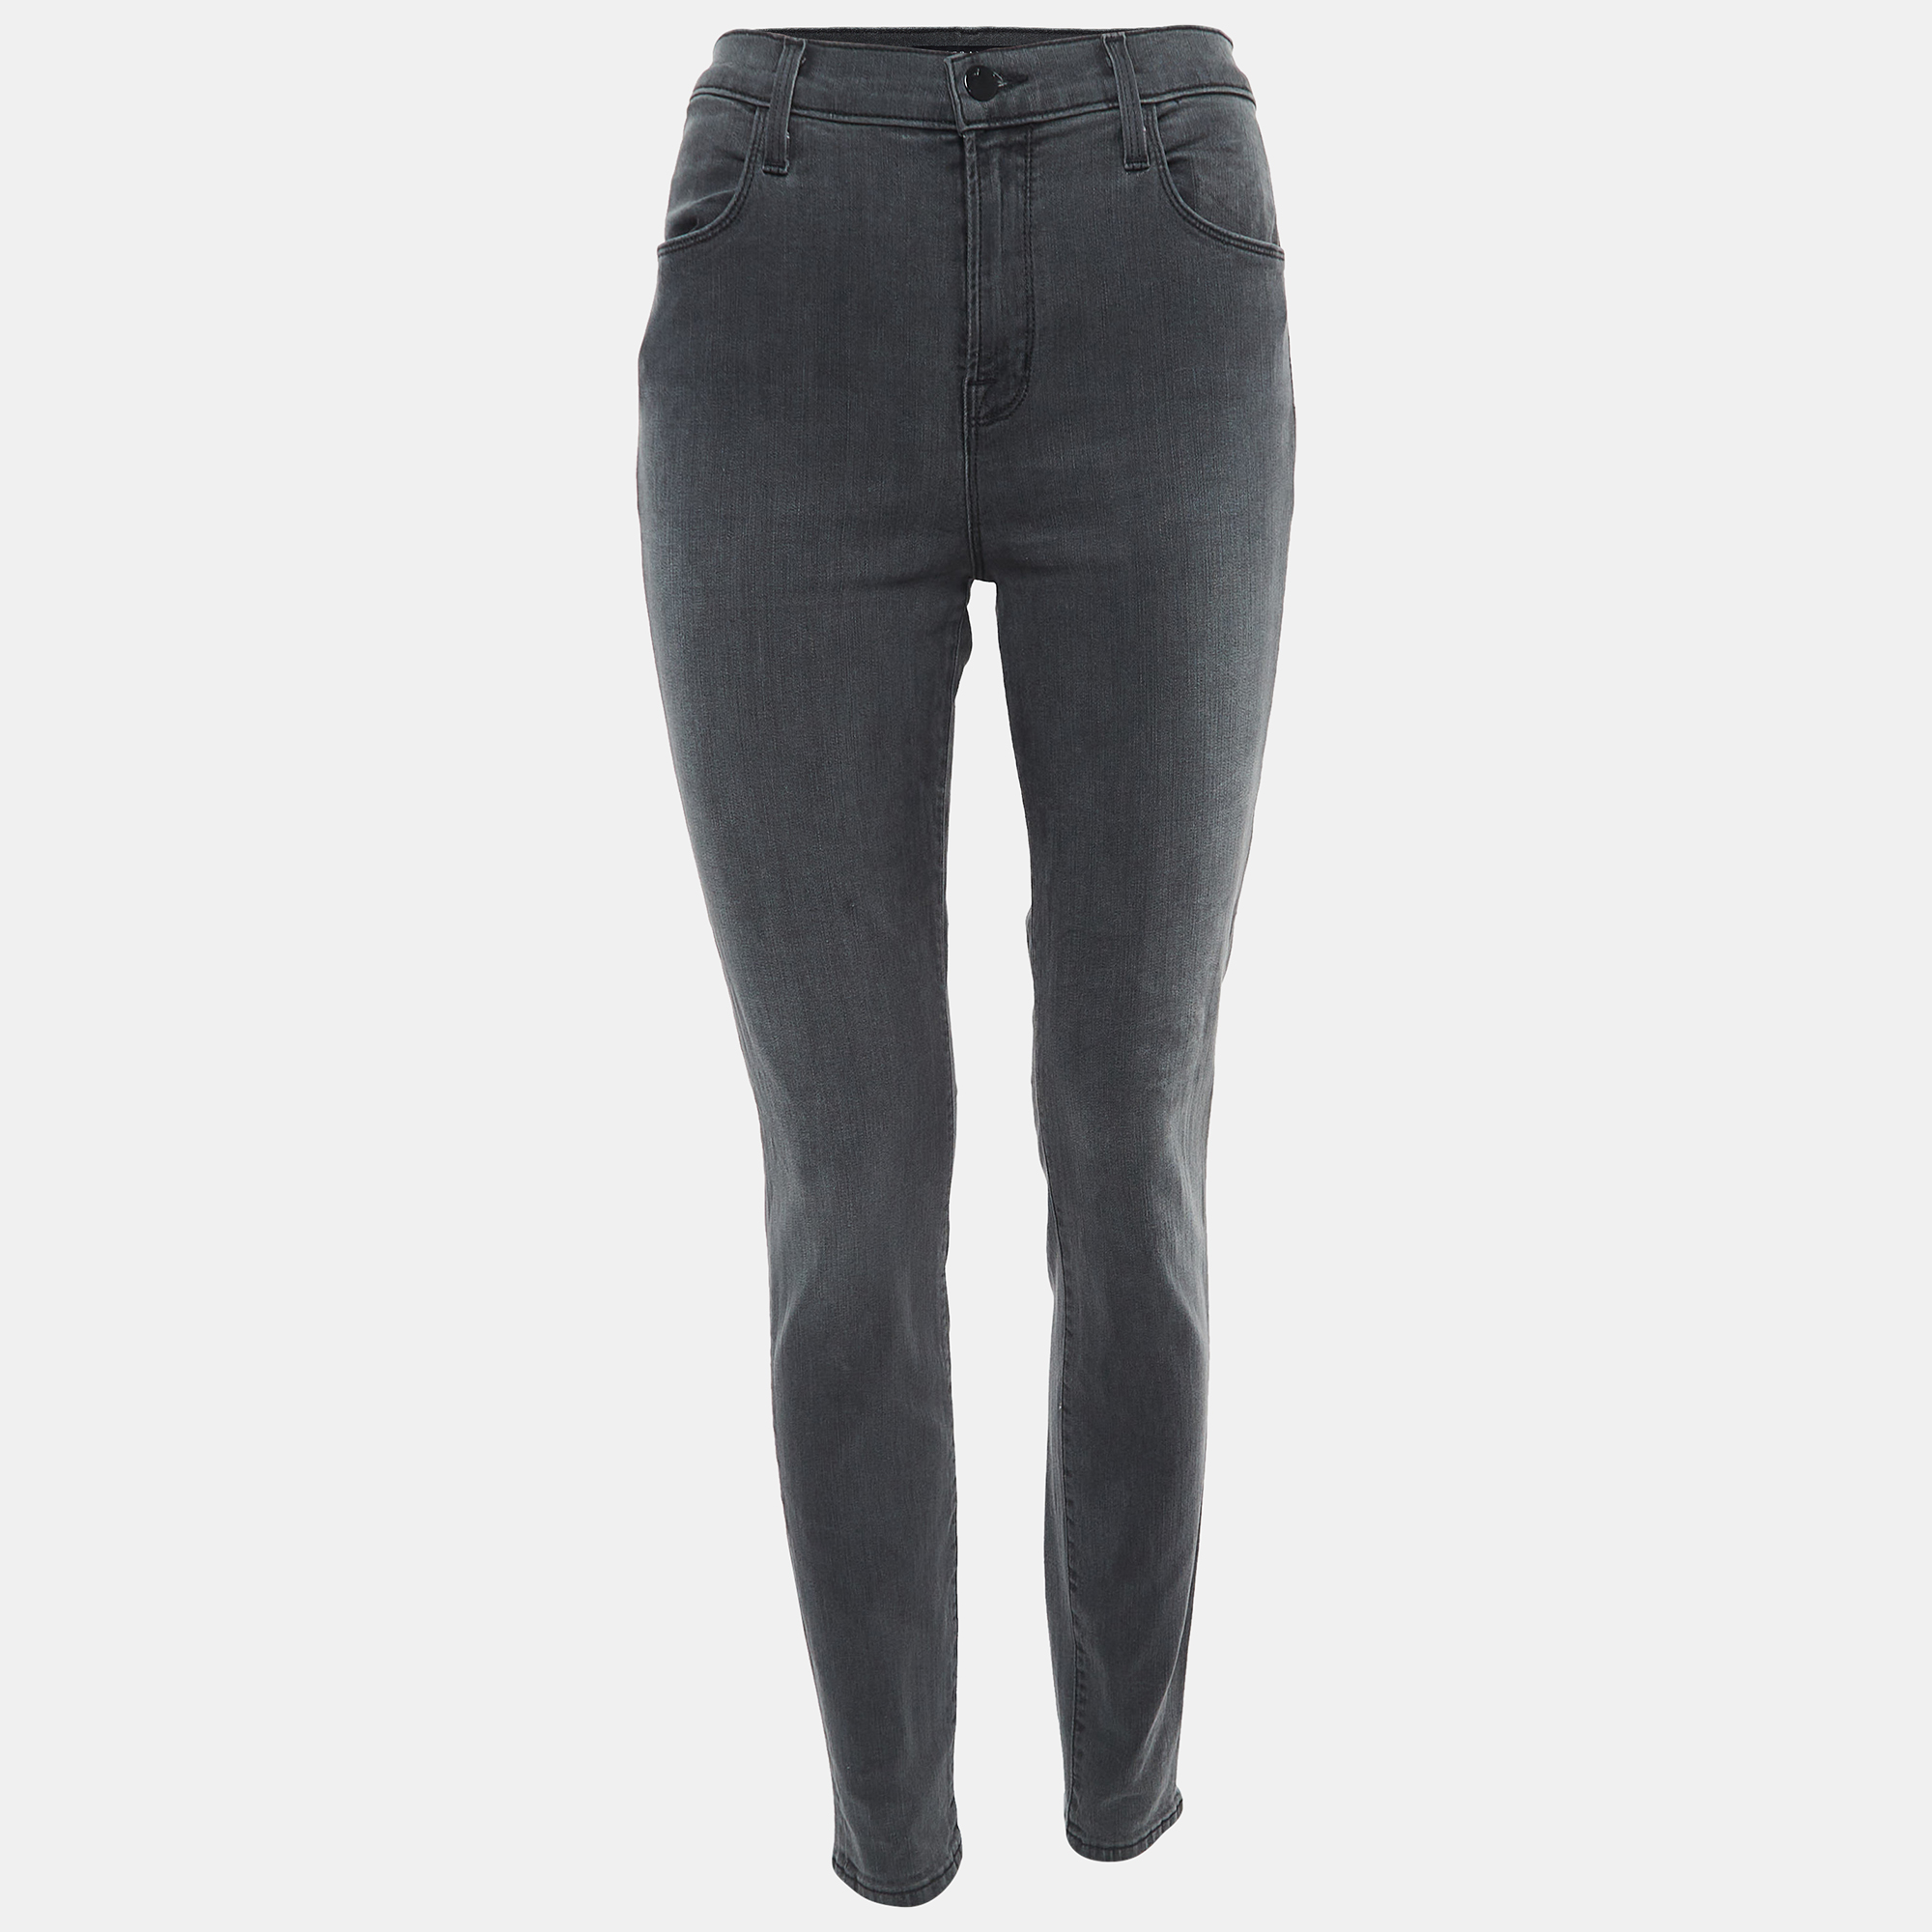 J brand grey washed denim skinny jeans m waist 29"